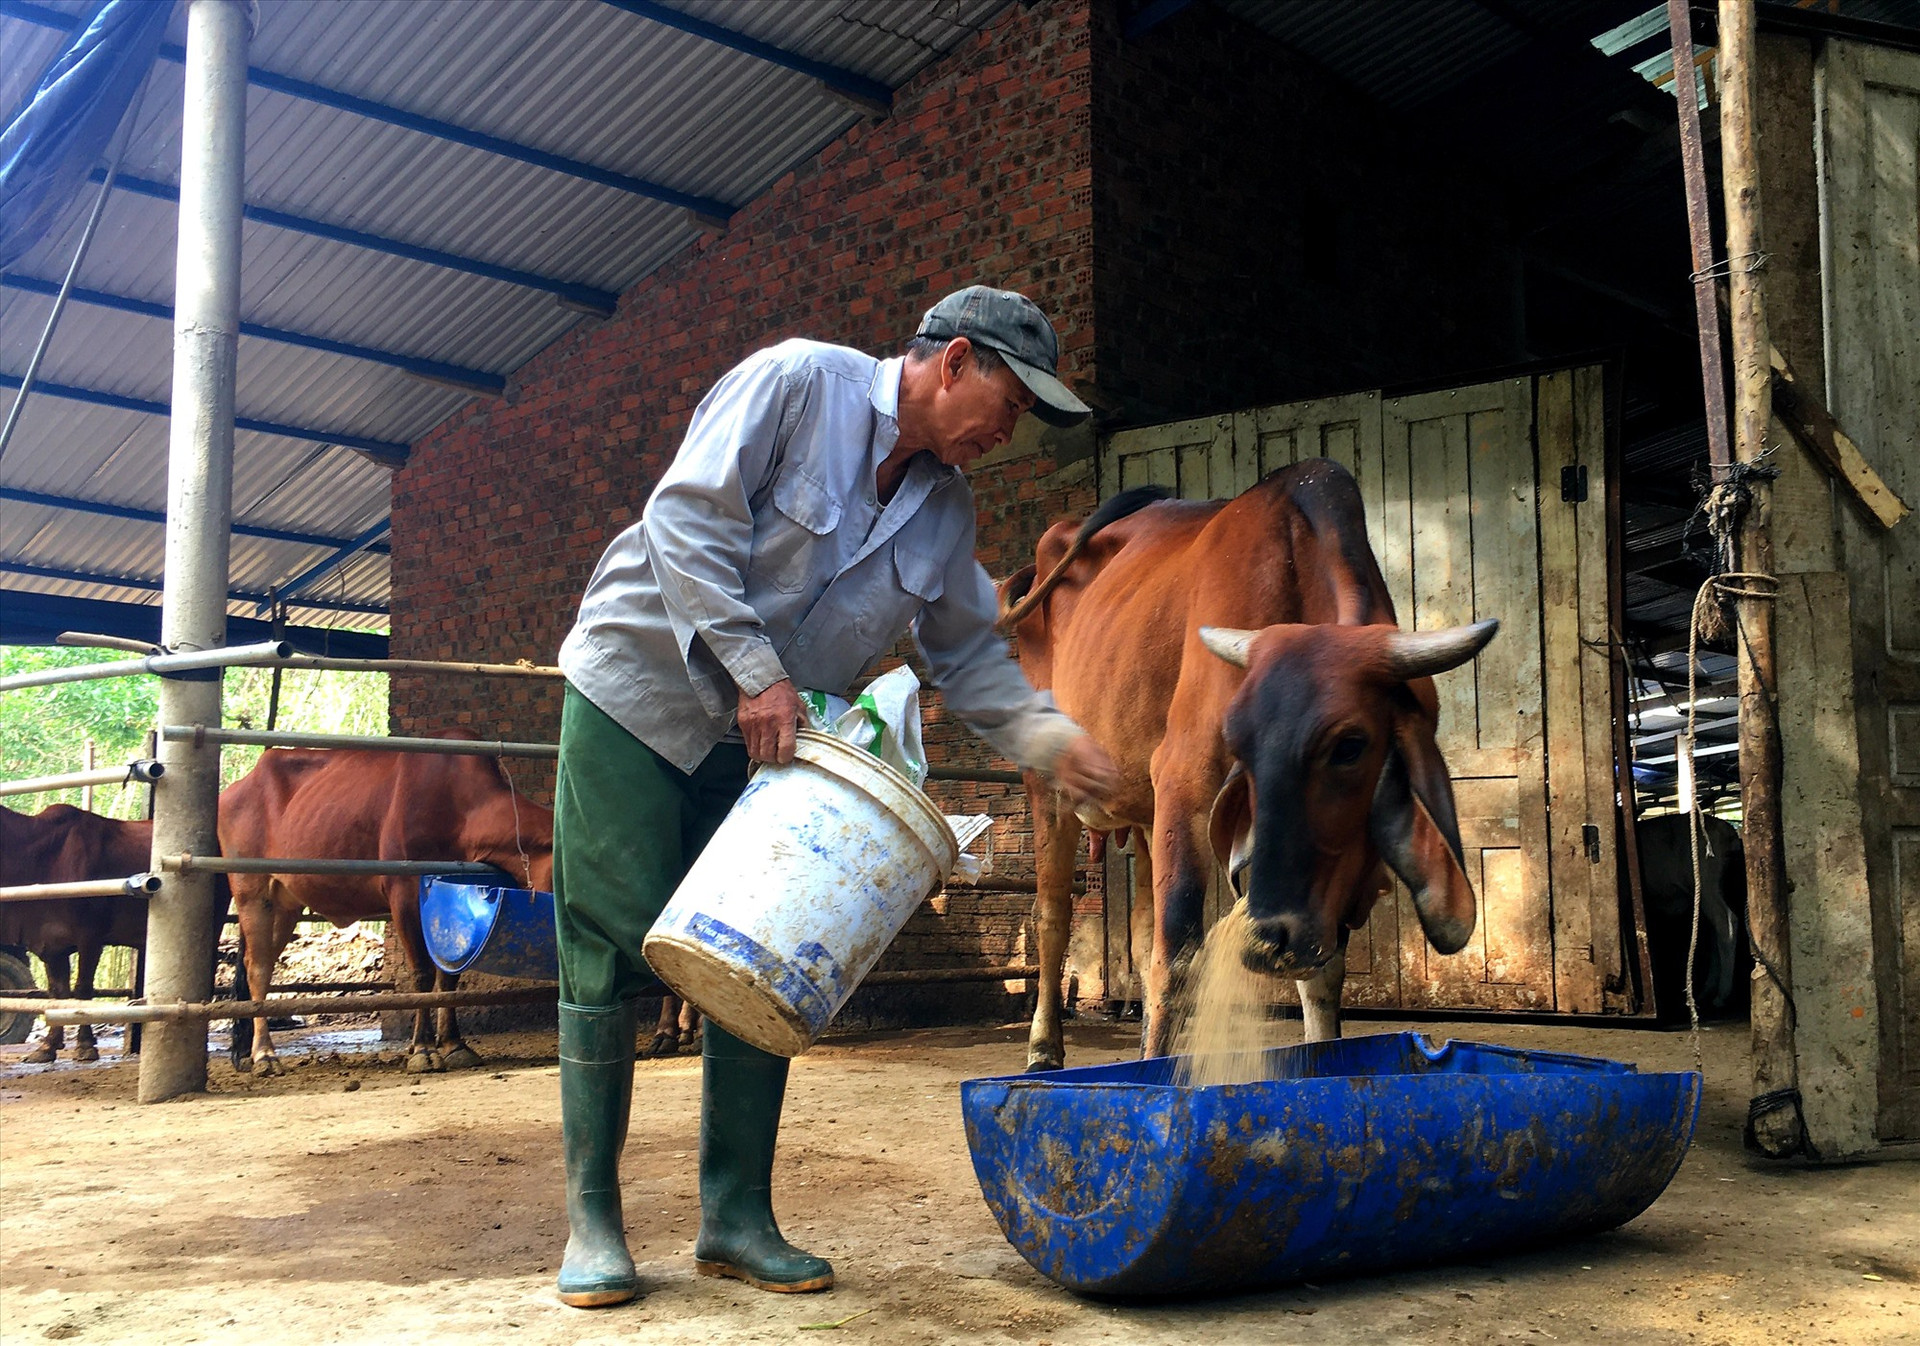 Những năm gần đây, người dân huyện Nông Sơn đầu tư mạnh mô hình nuôi bò thâm canh, phát triển kinh tế. Ảnh: S.A